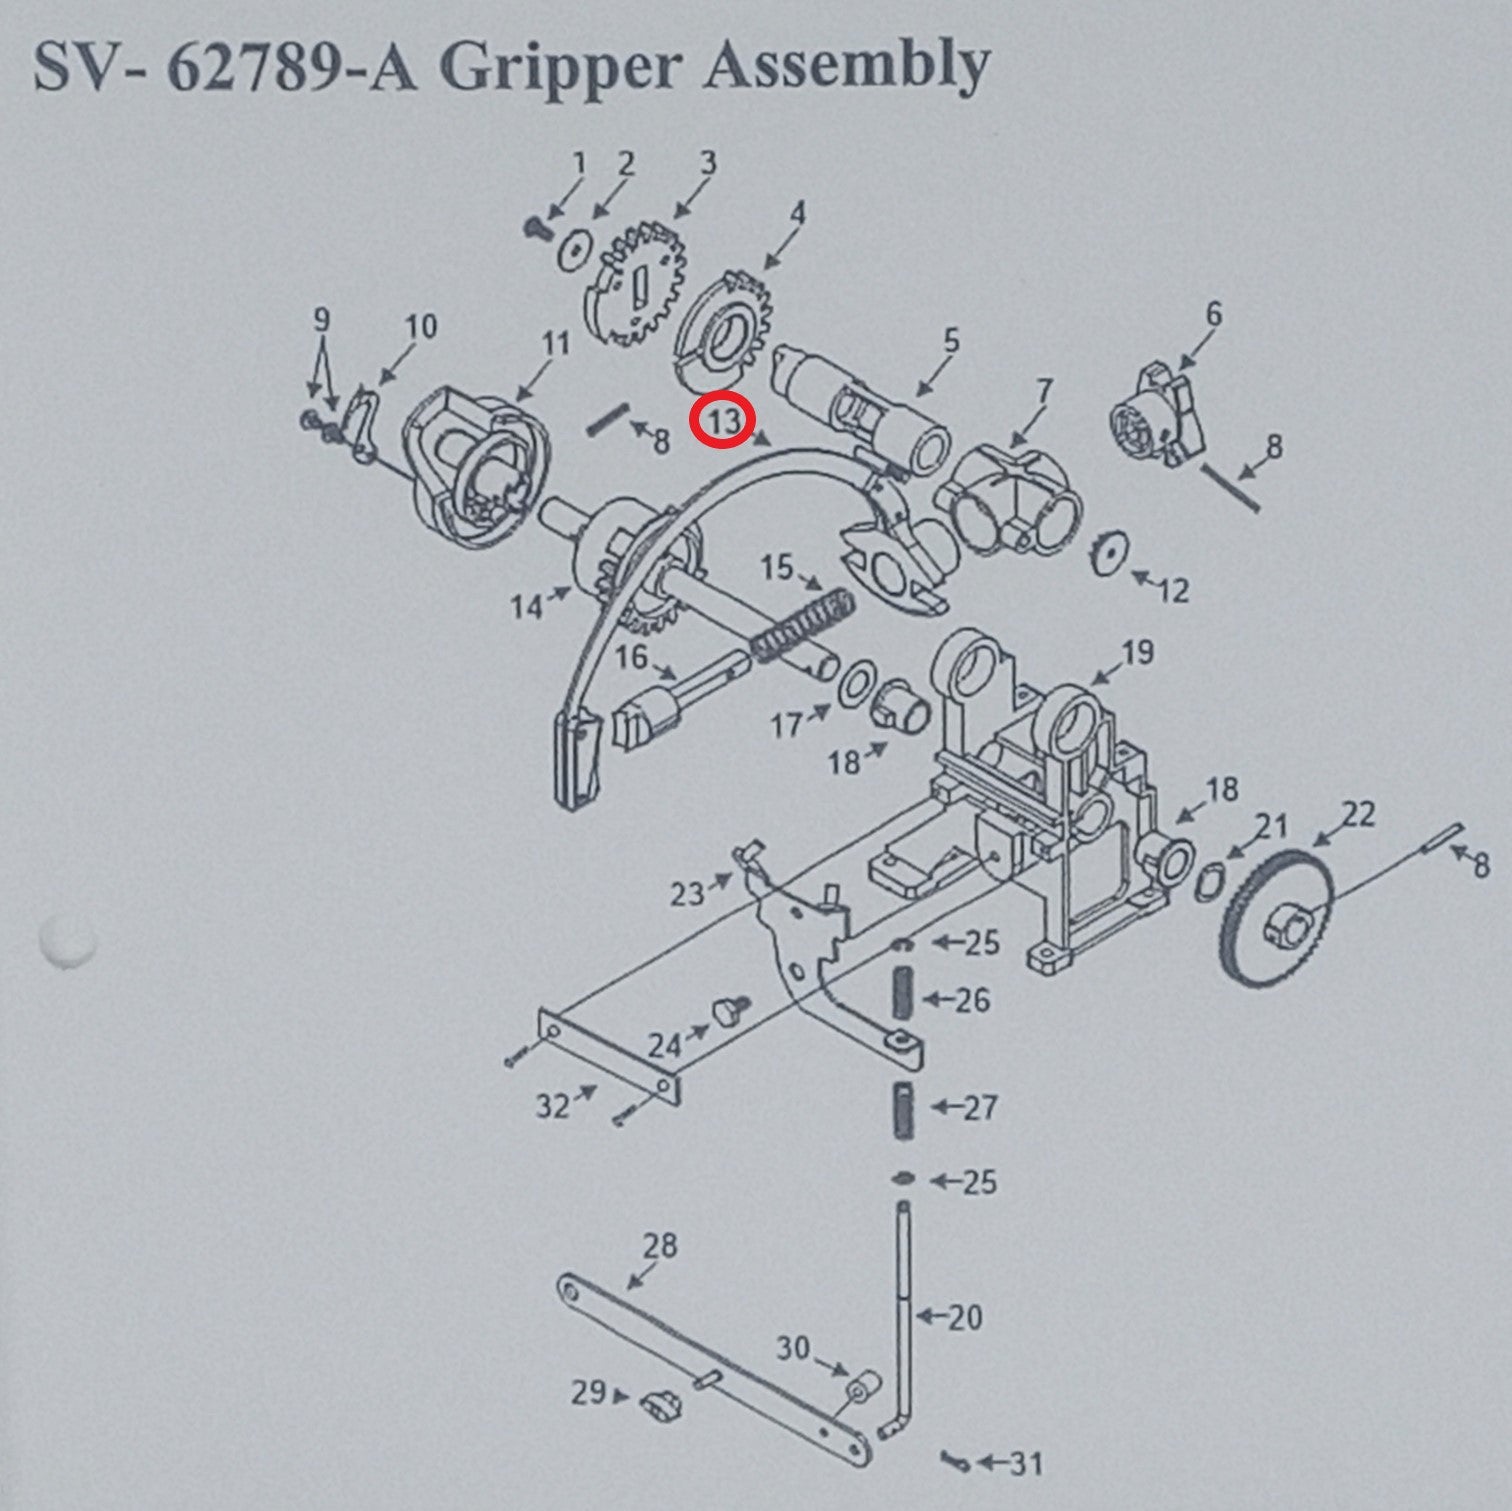 Rock-Ola Gripper Arm Assembly - Vinyl (62787-A)